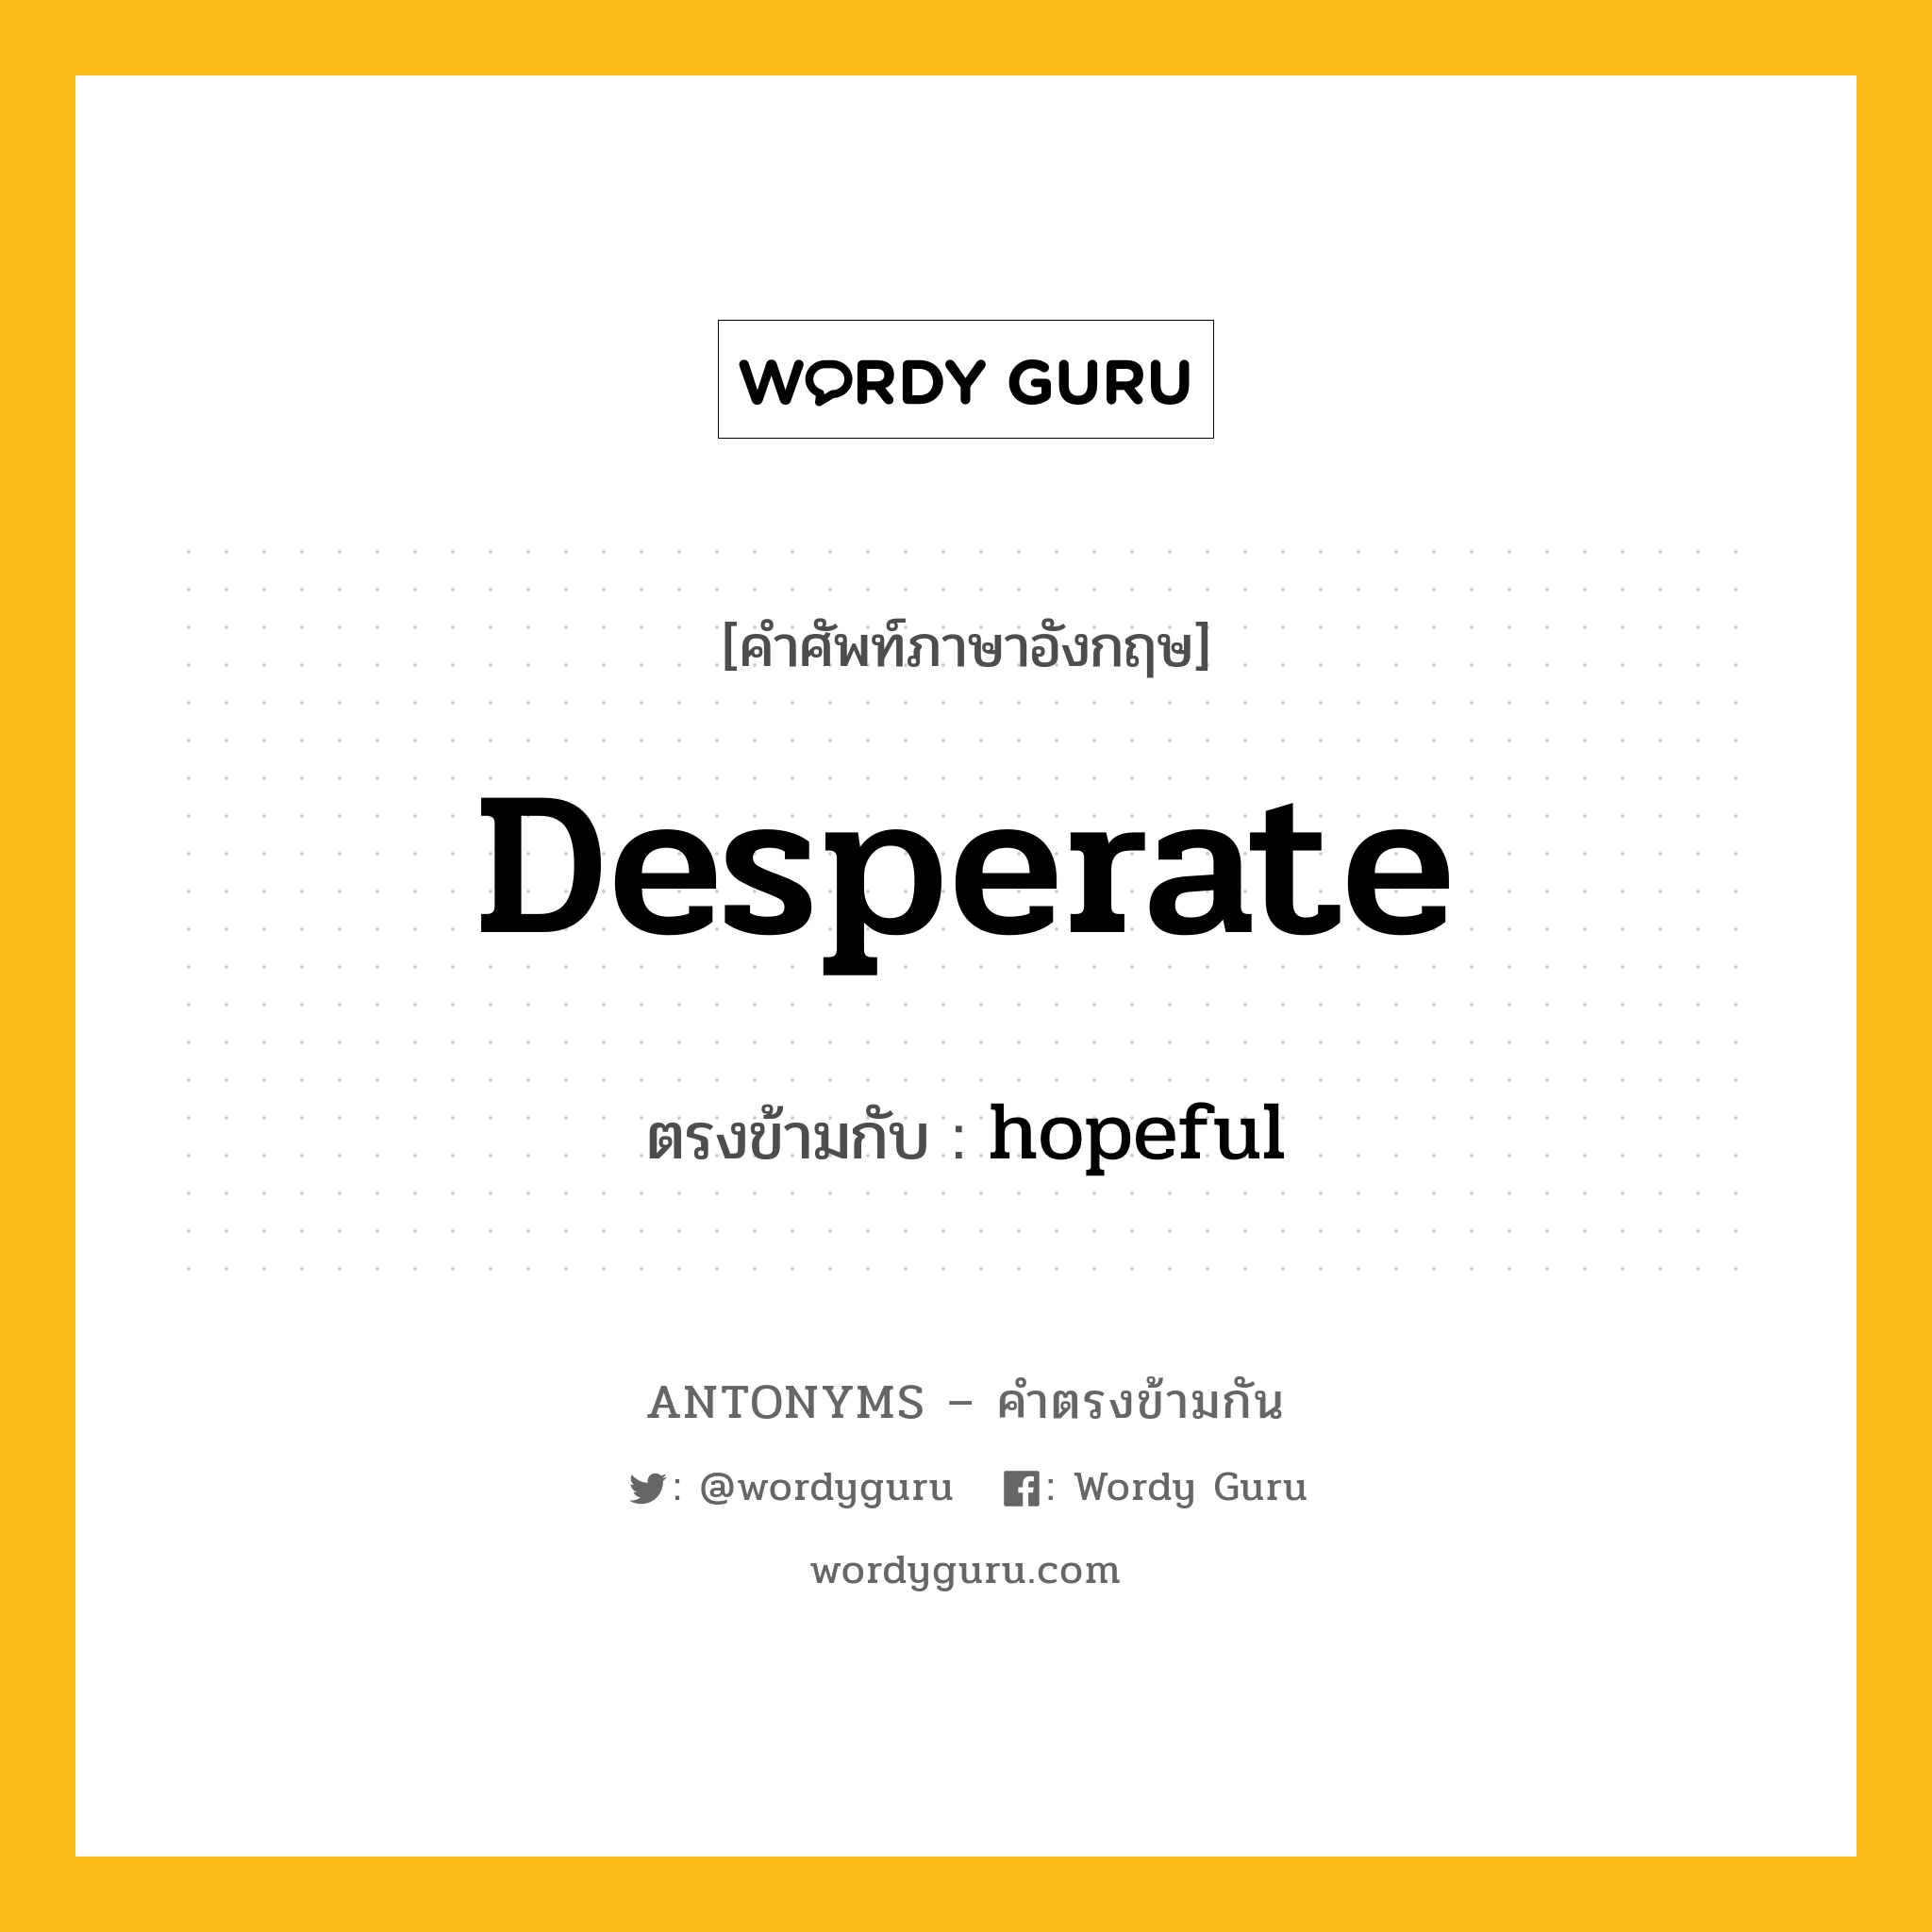 desperate เป็นคำตรงข้ามกับคำไหนบ้าง?, คำศัพท์ภาษาอังกฤษ desperate ตรงข้ามกับ hopeful หมวด hopeful